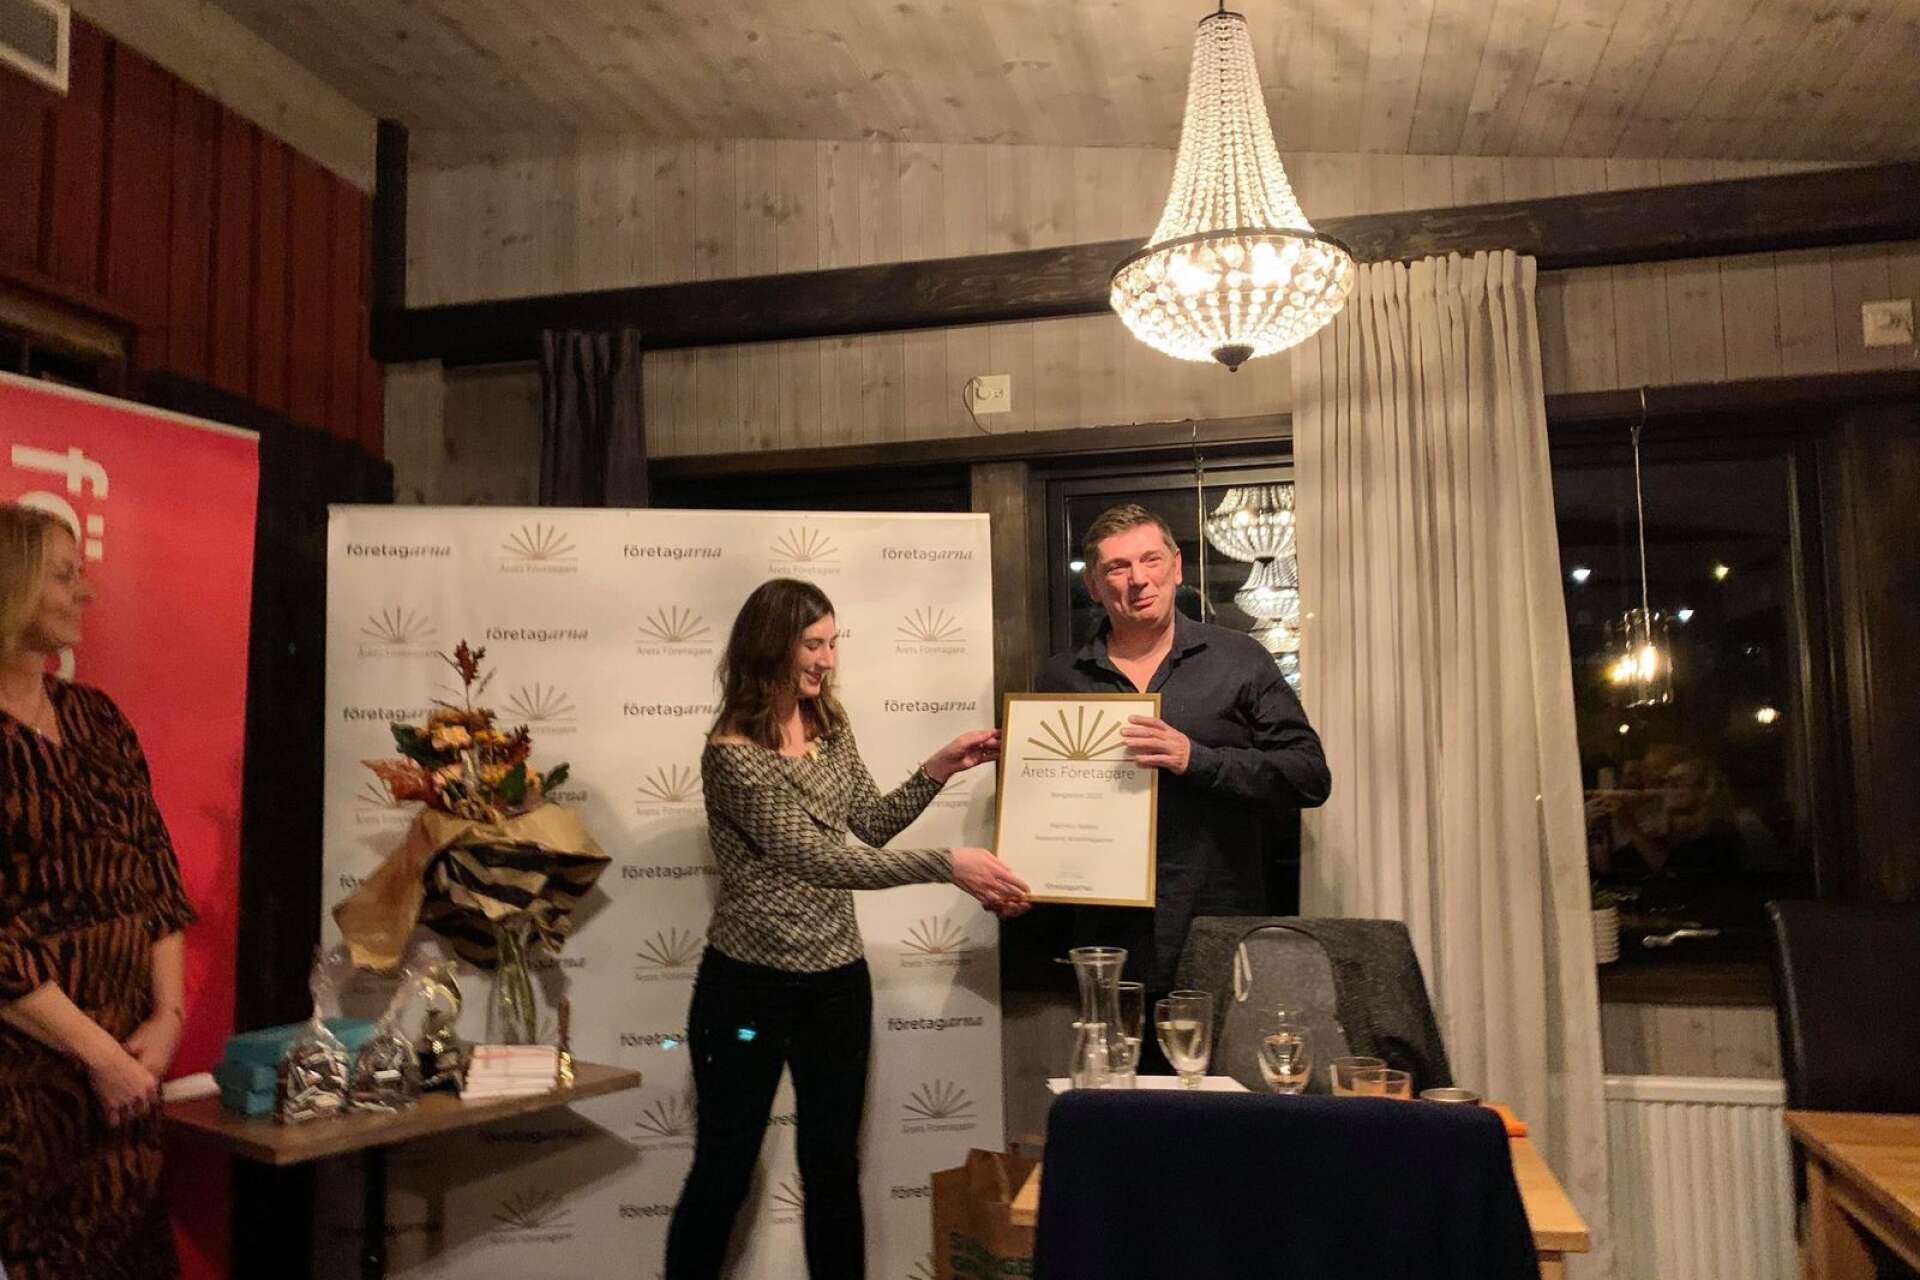 Företagarnas ordförande Stephanie Brodeur Flink läste motiveringen och delade ut diplom och blommor till Marinko Aleksic som under åtskilliga år drivit och utvecklat restaurangverksamheten i Bengtsfors.